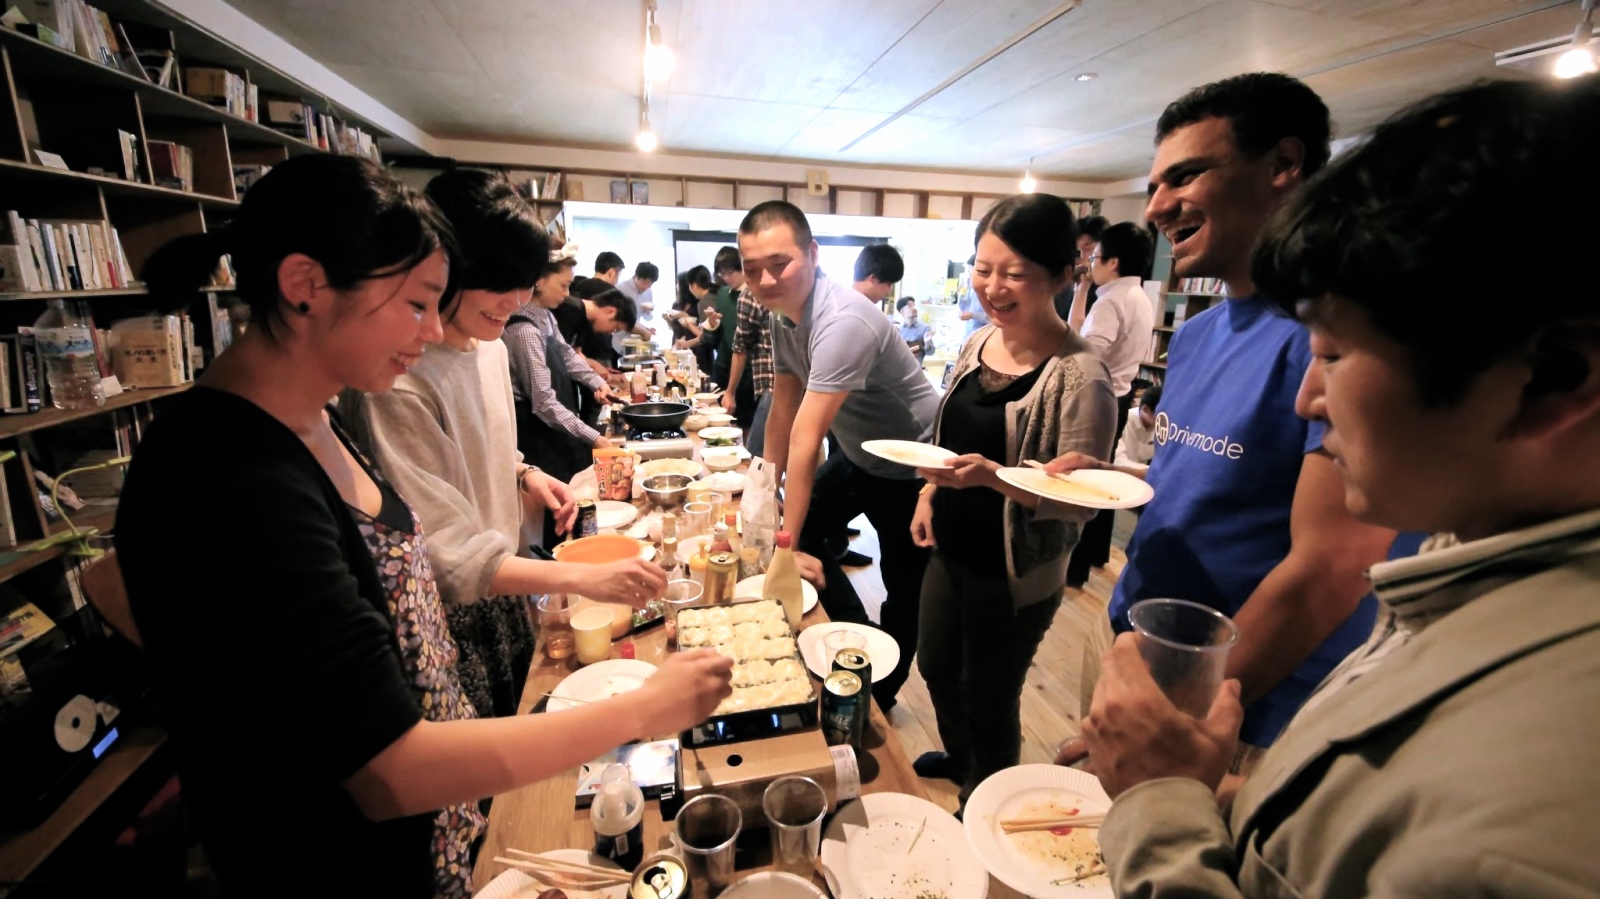 毎月開催されているco-ba shibuya交流会。会員でなくても参加できるオープンな雰囲気。